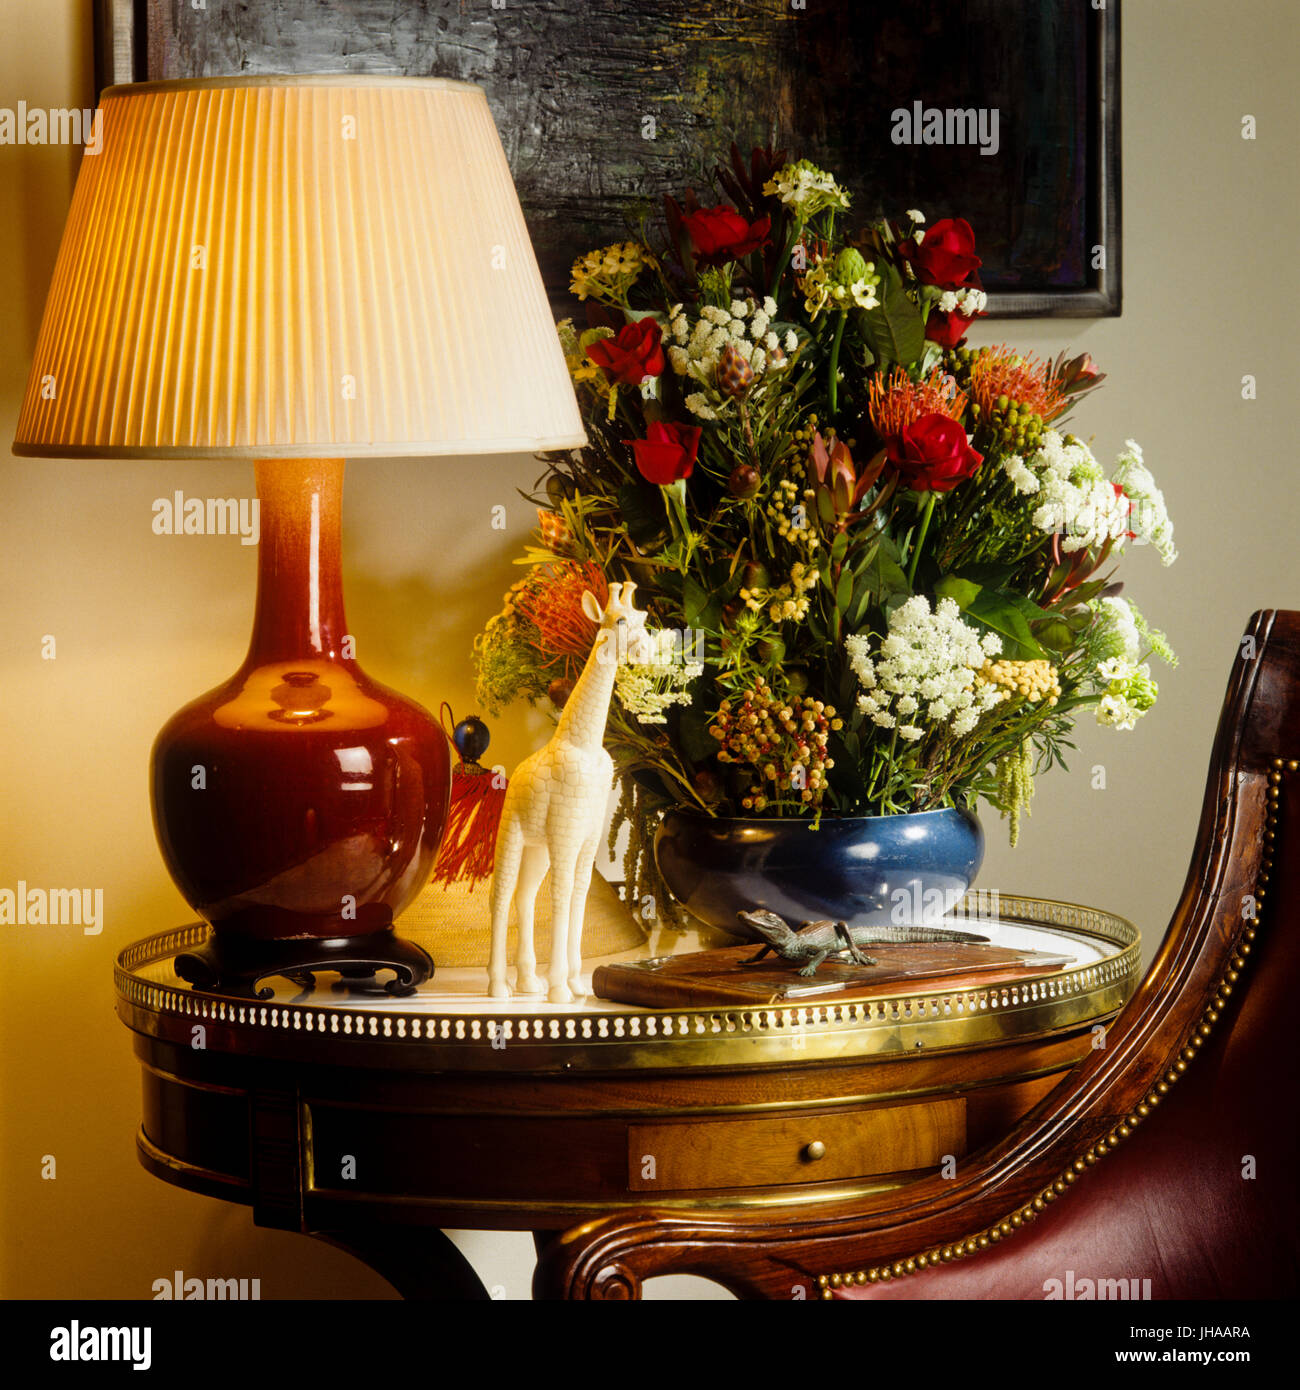 Lampe allumée et fleurs sur table Banque D'Images